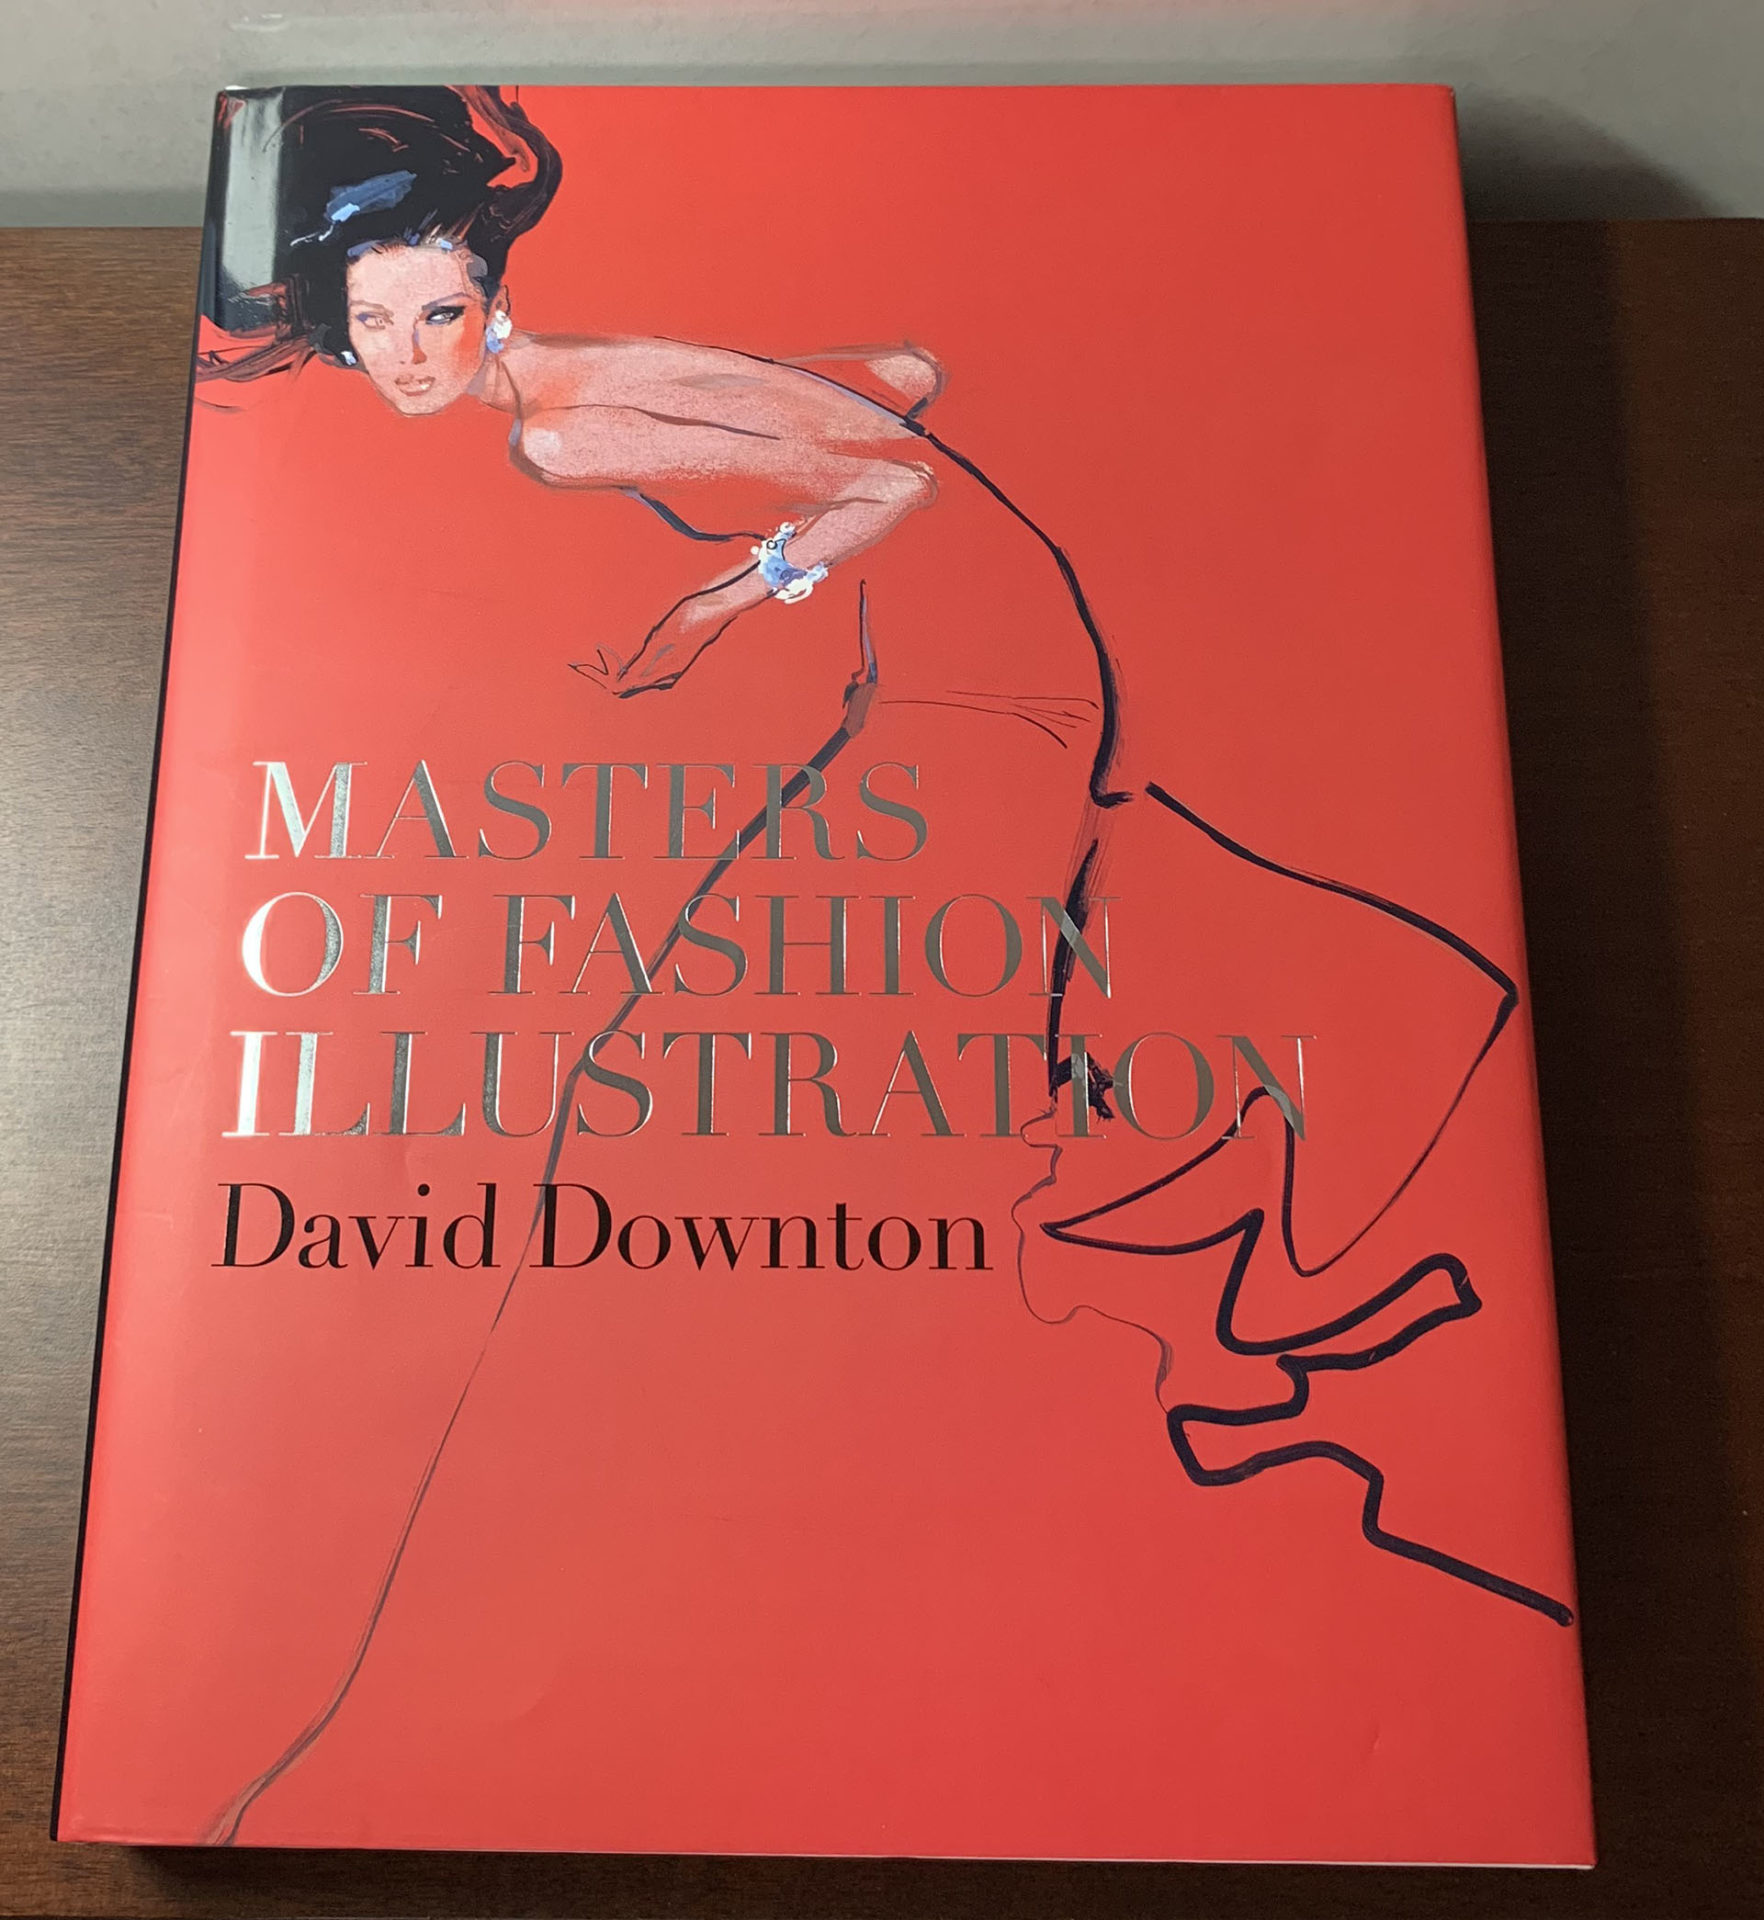 【アートブックレビュー】「Masters of Fashion Illustration」David Downton (著) ハイクオリティなファッションイラストレーションをまとめた一冊